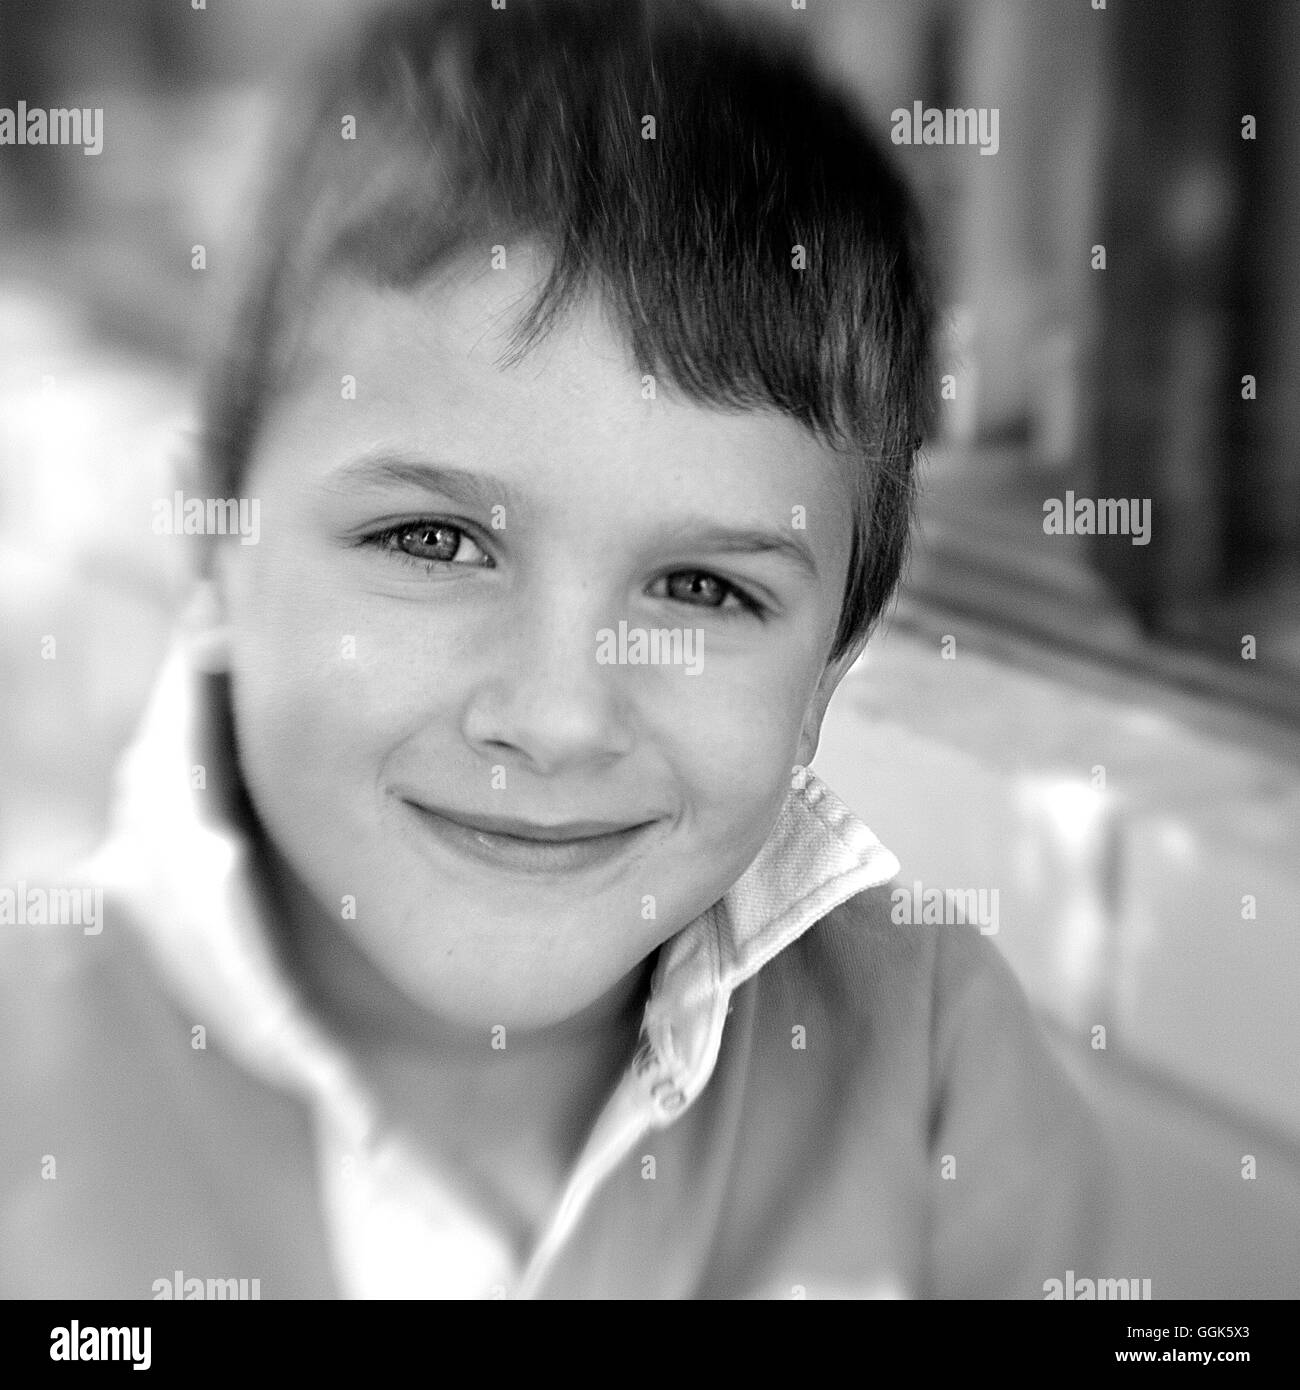 Grinst junge (schwarz / weiß Foto mit Lensbaby-Technik), Borden, Western Australia, Australien Stockfoto